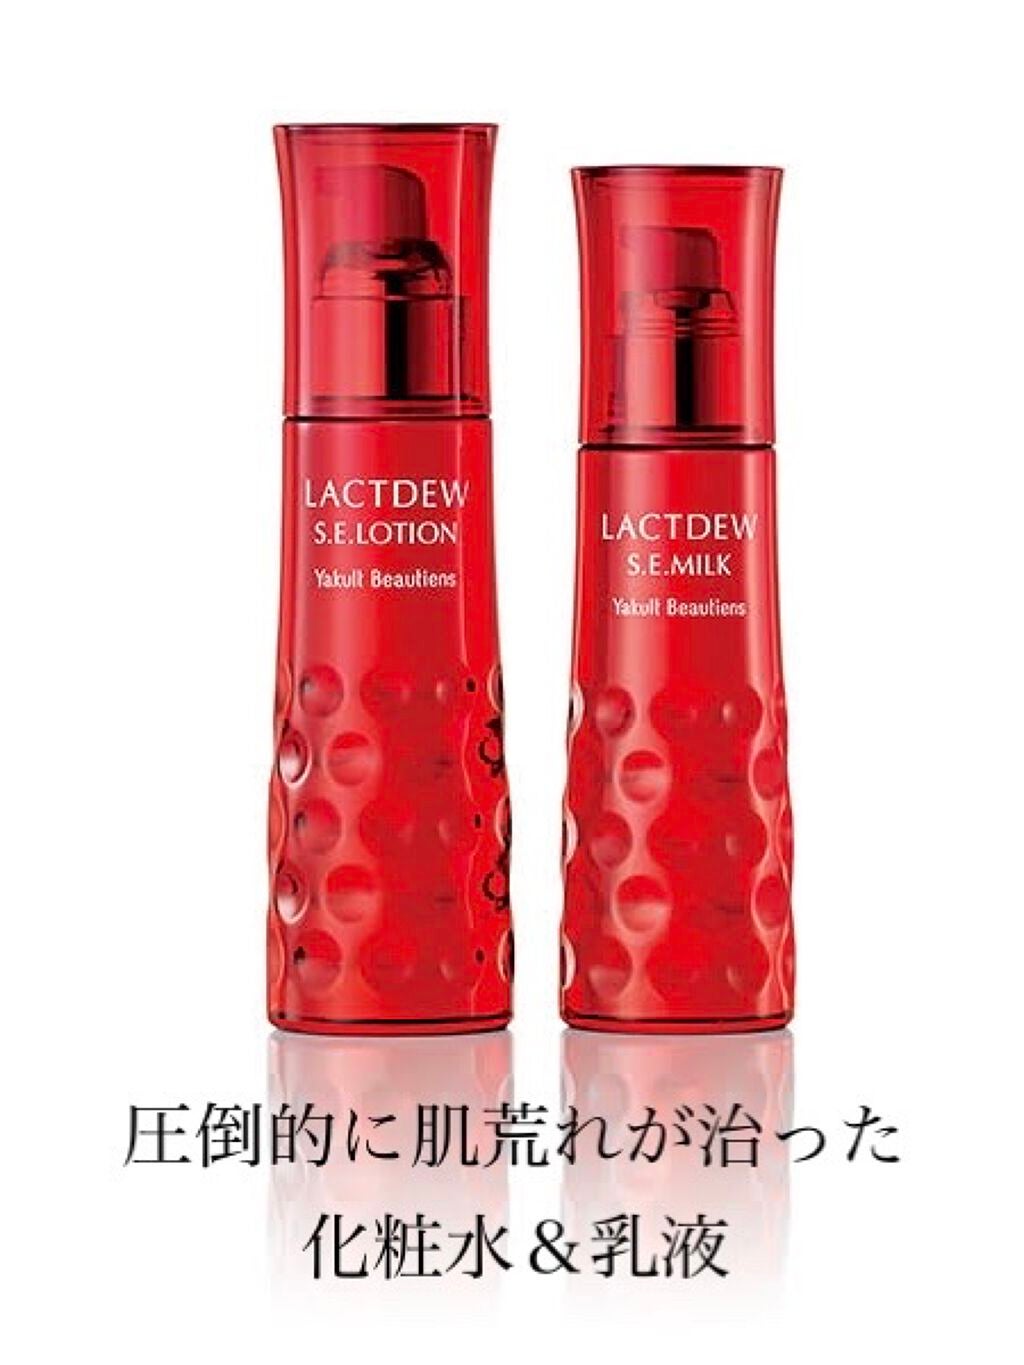 ラクトデュウローションサンプル 日本正規代理店品 - 化粧水